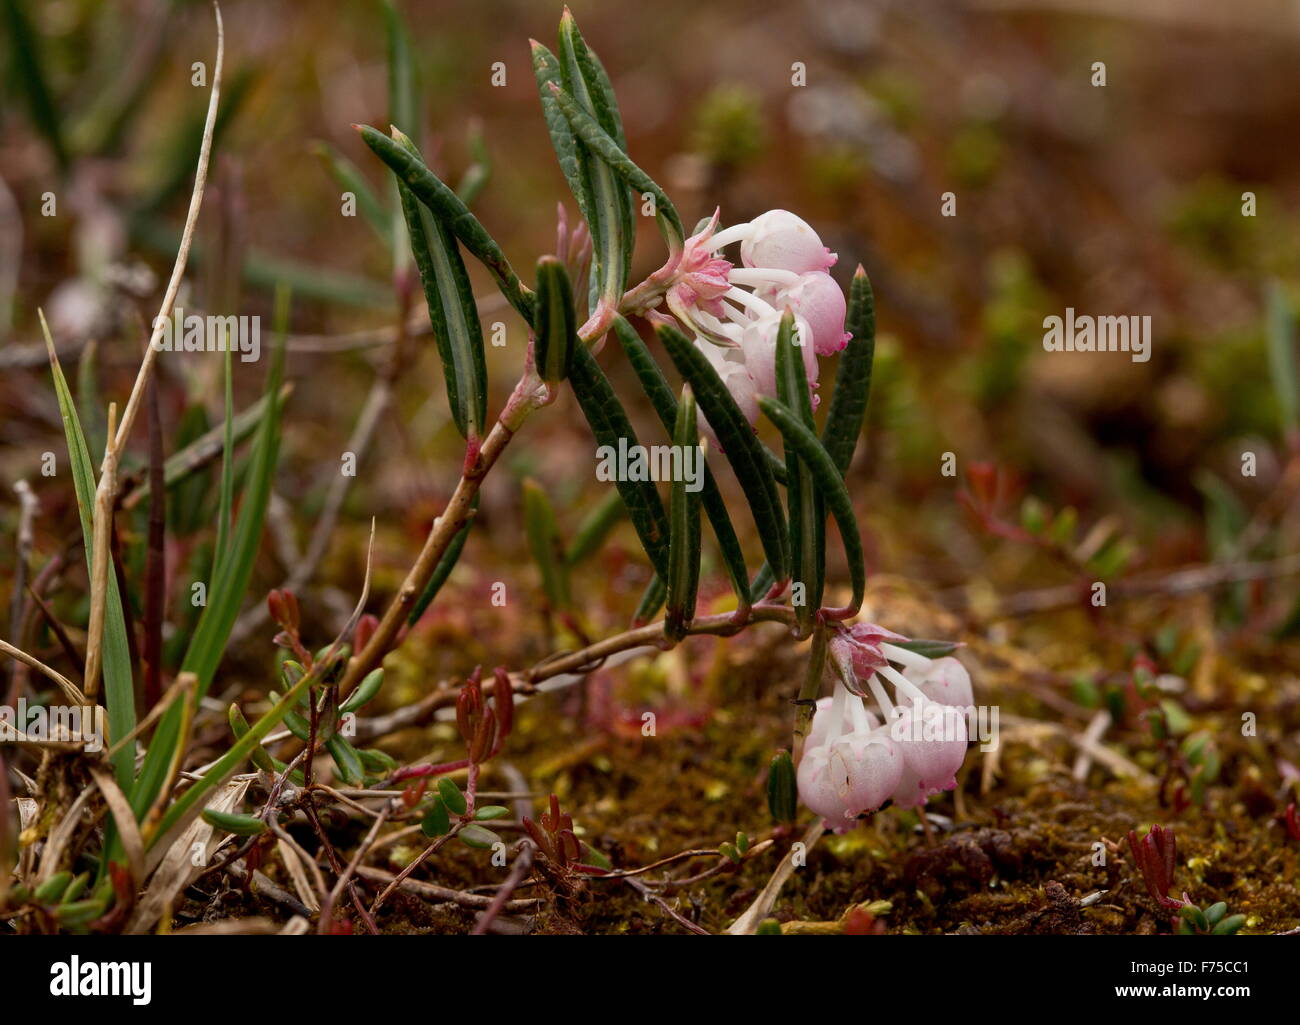 Bog-rosemary, Andromeda polifolia var. glaucophylla, in flower, in a bog in Newfoundland. Stock Photo